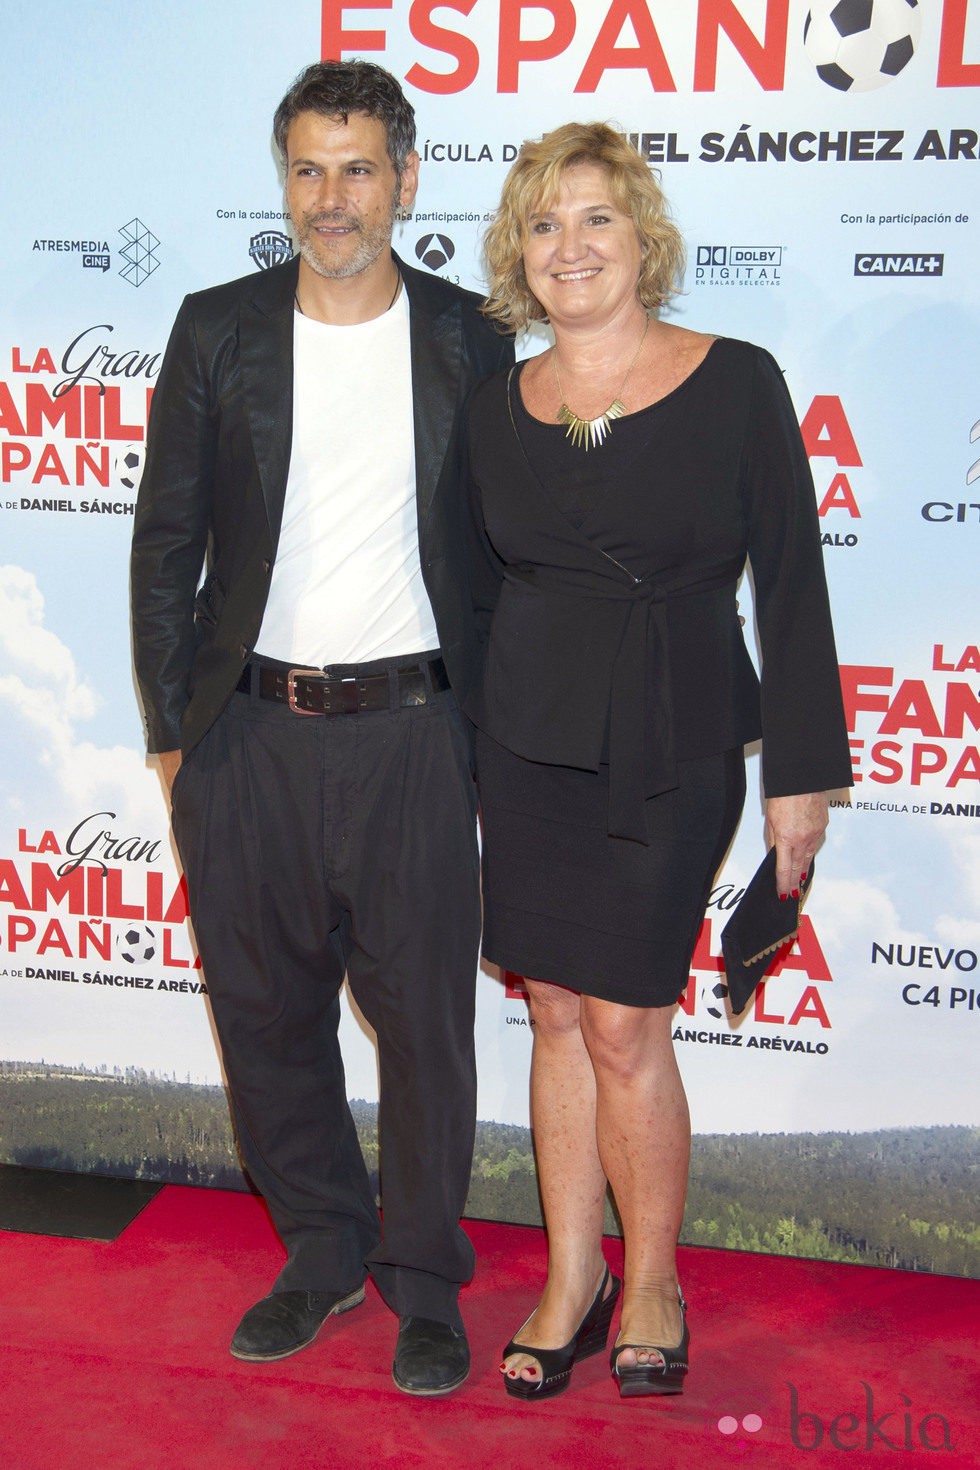 Roberto Enríquez y Ana Wagener en el estreno de 'La Gran Familia Española'